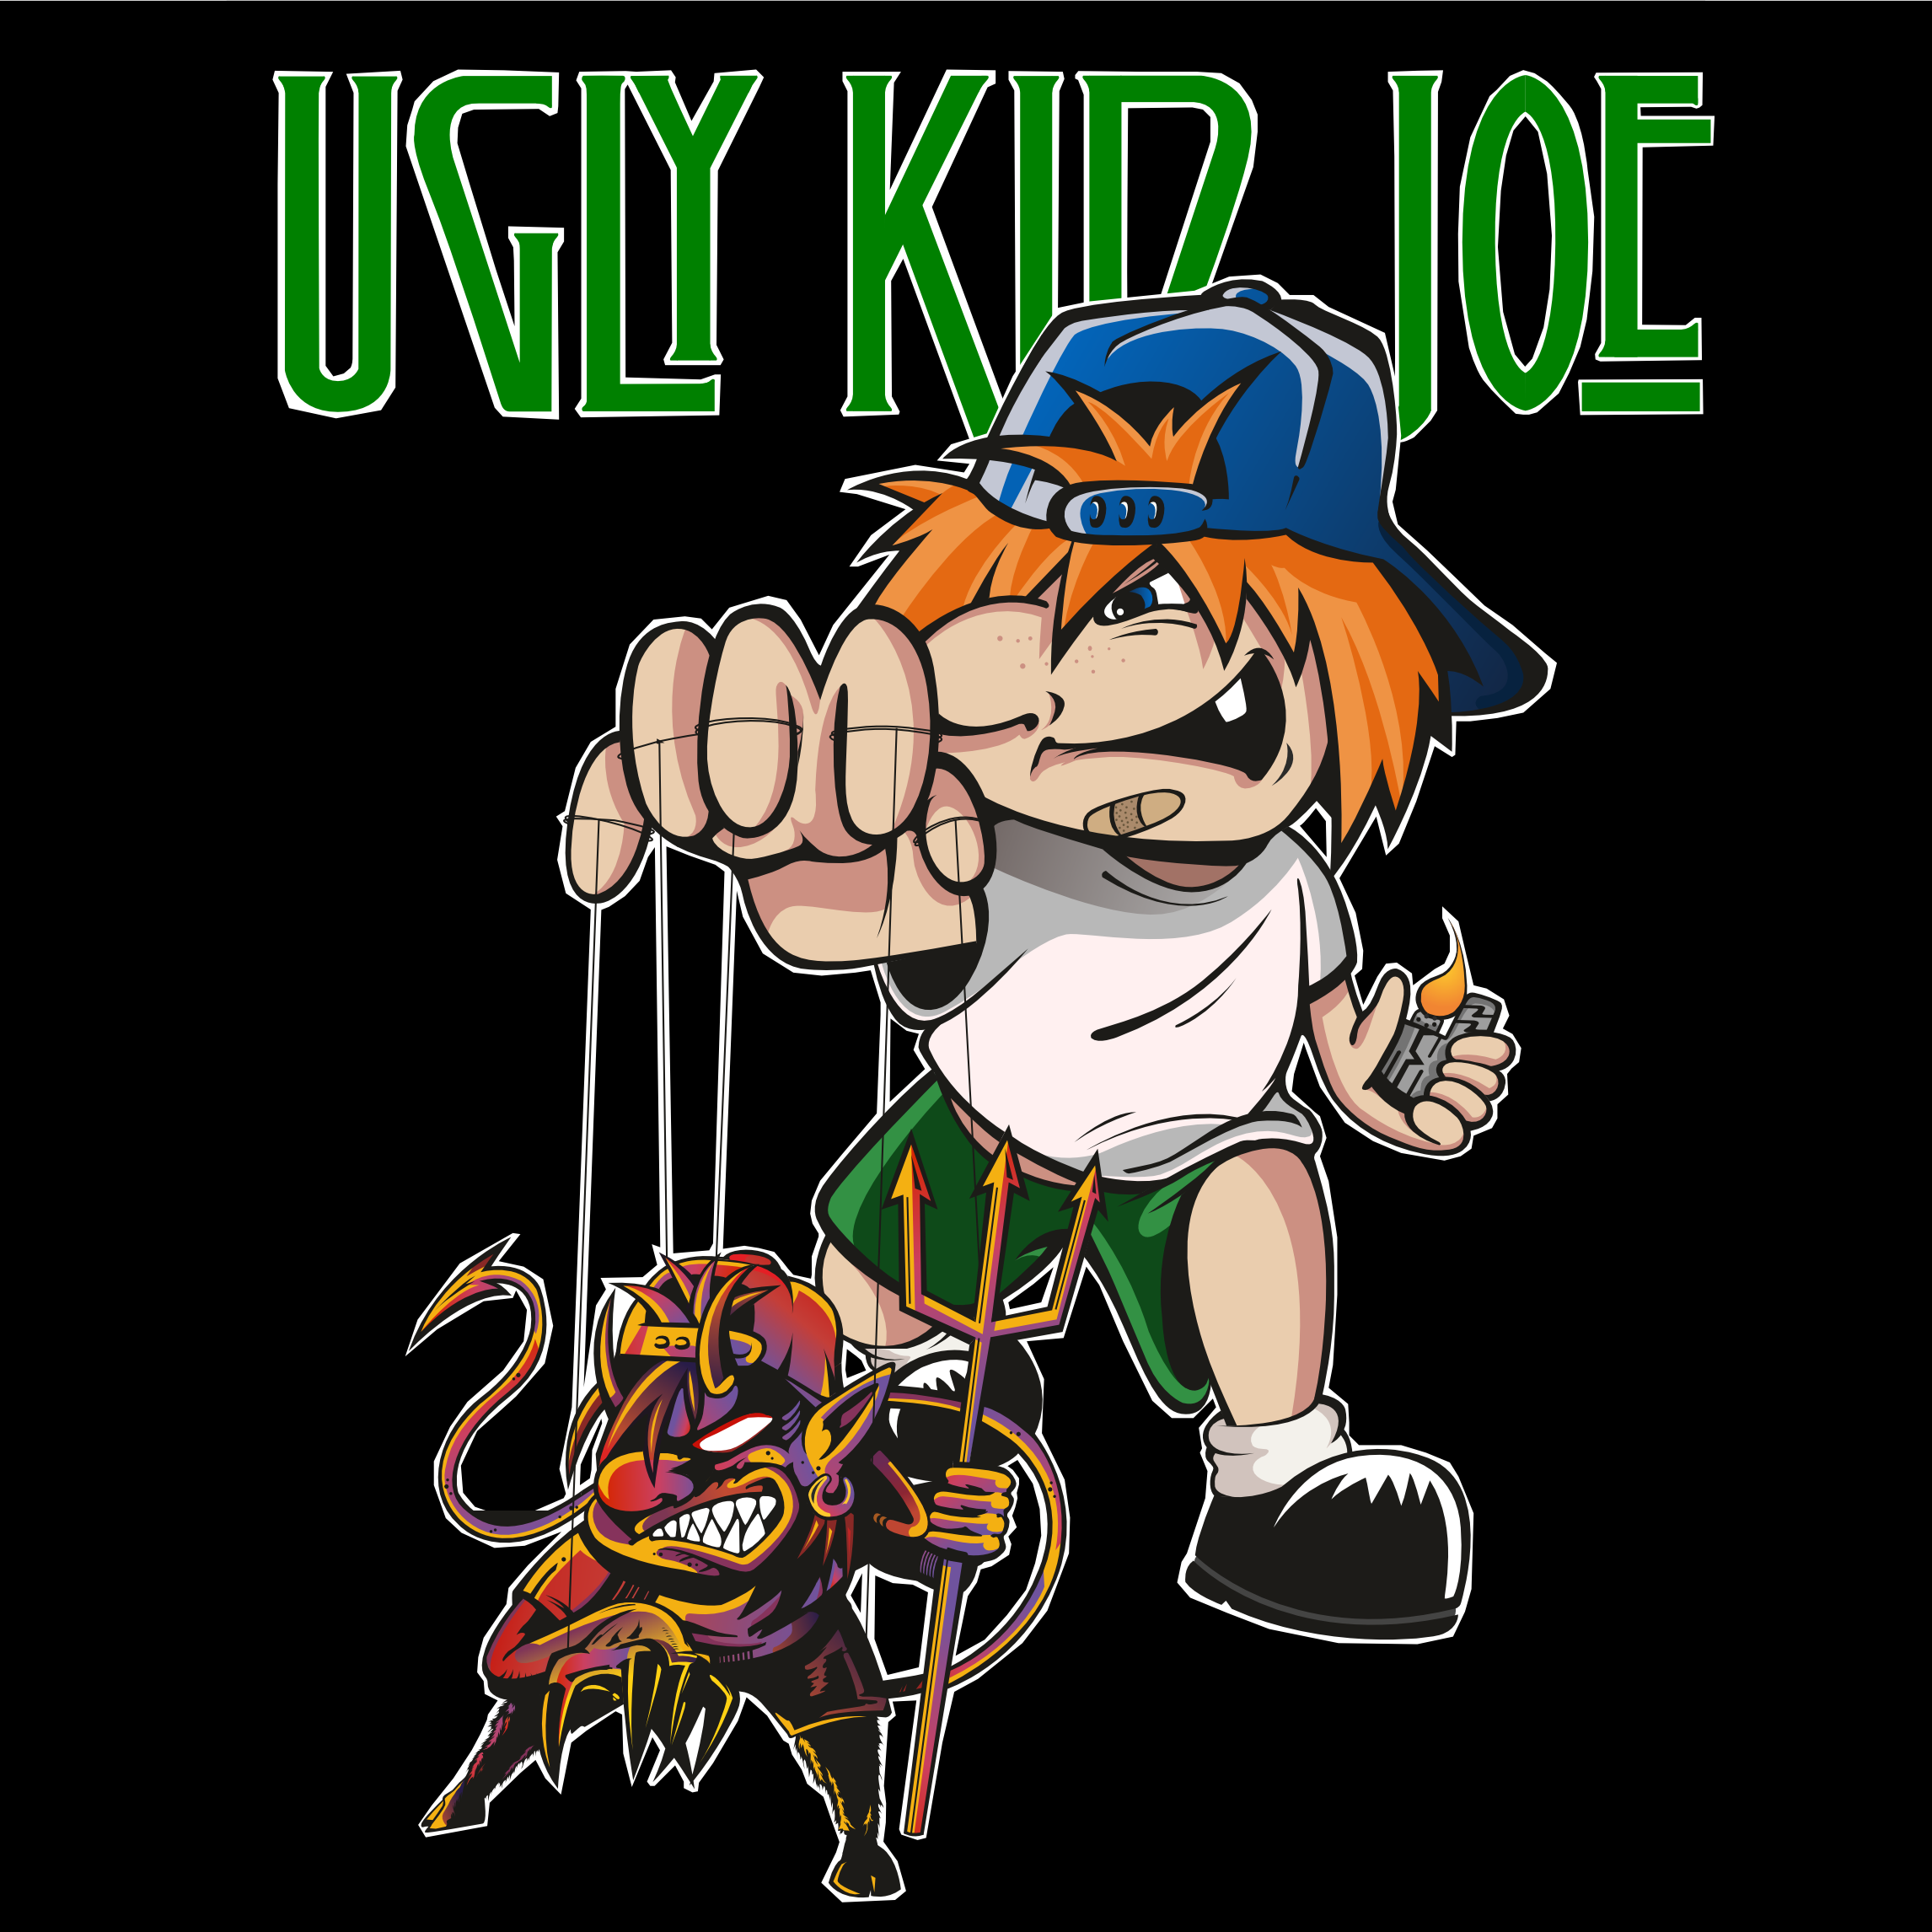 Агли кид. Агли КИД Джо. Ugly Kid Joe Band. Ugly Kid Joe вокалист. Ugly Kid Joe Википедия.